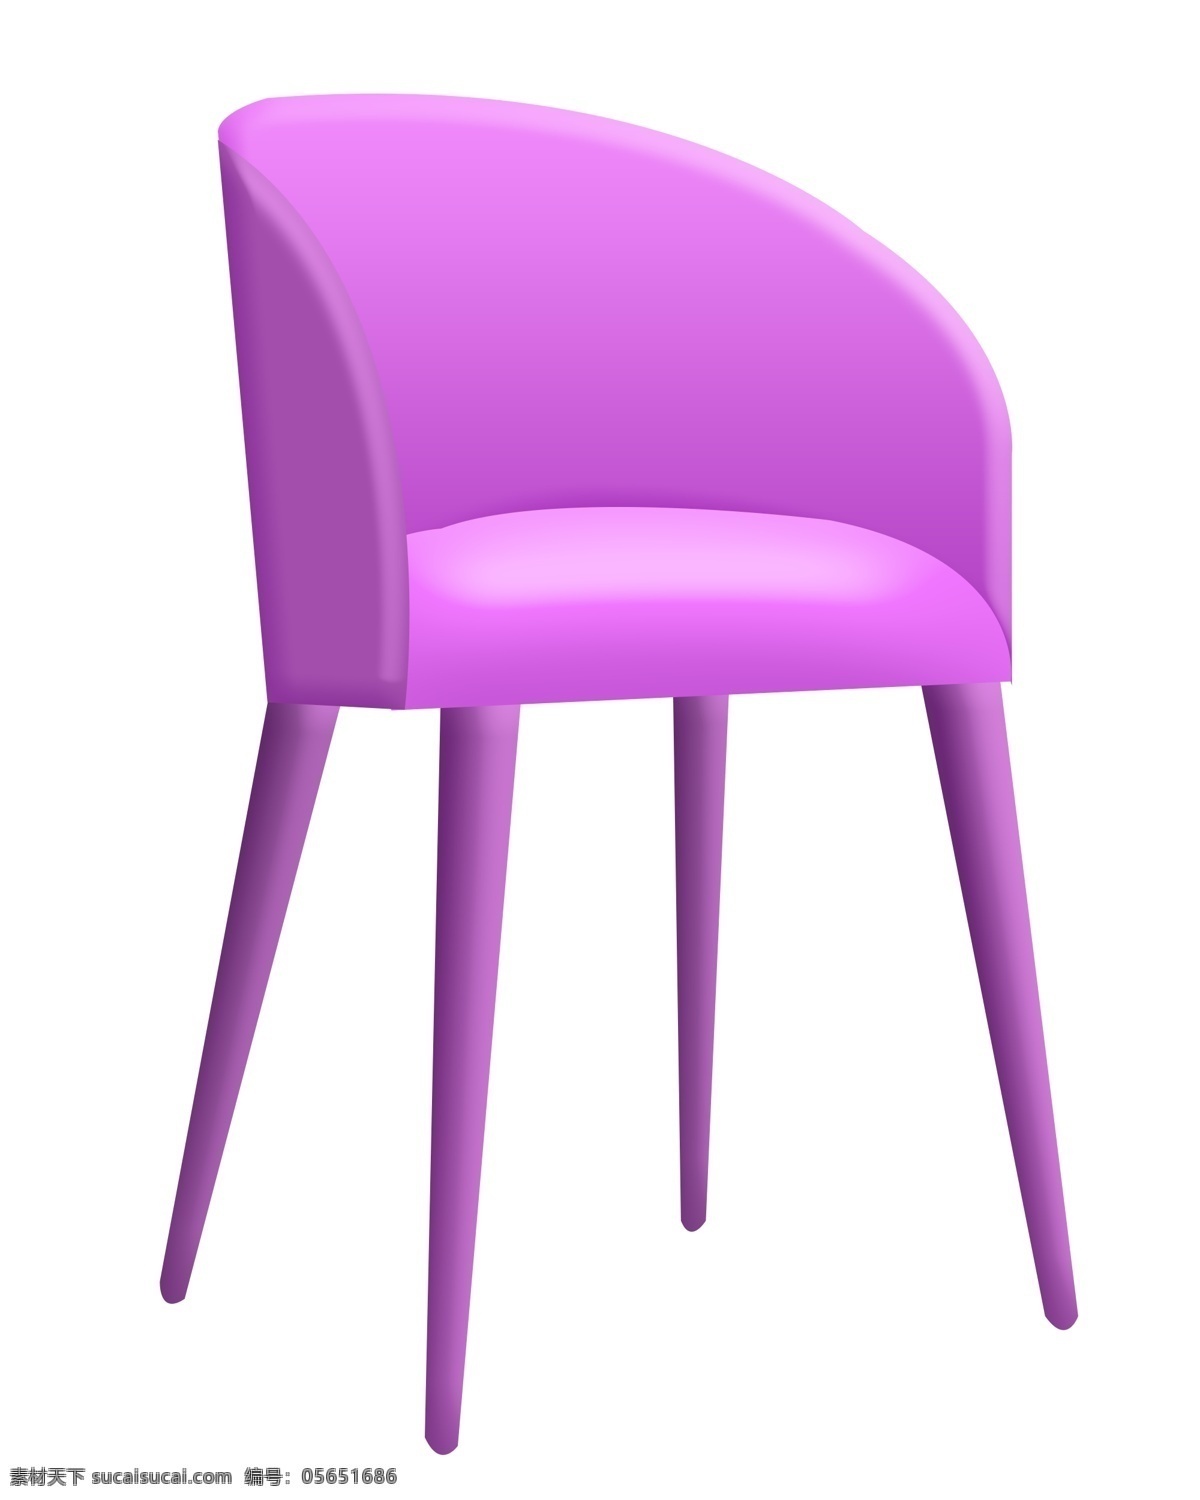 一把 紫色 靠背 椅子 一把椅子 紫色靠背椅子 紫色椅子 铁皮椅子 家具 卡通椅子 紫色椅子插图